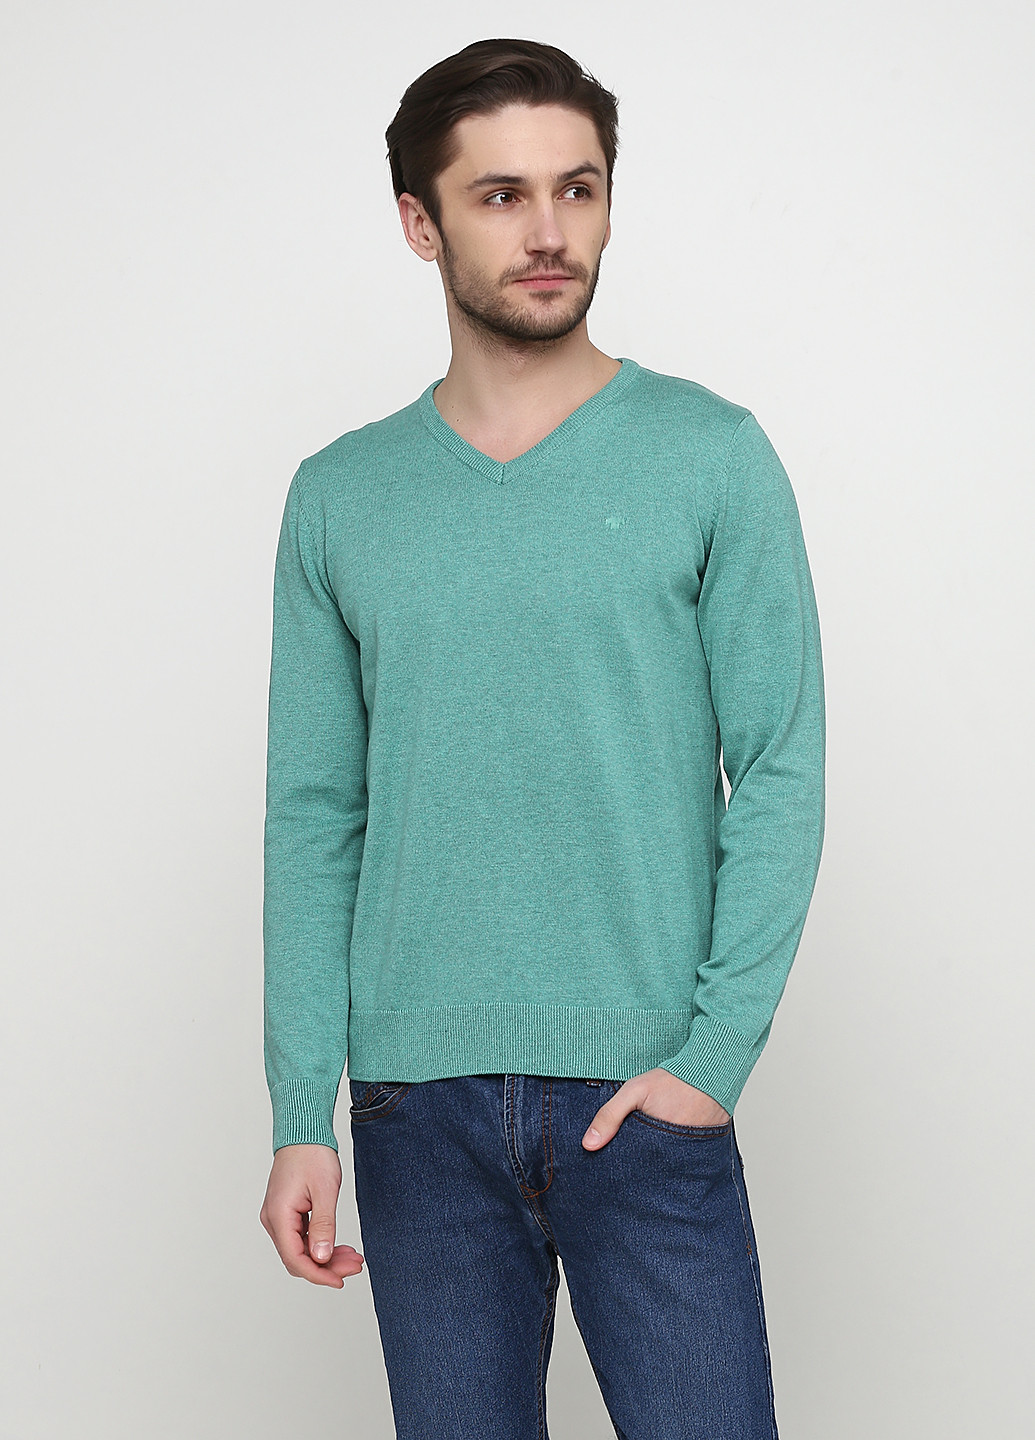 Светло-бирюзовый демисезонный пуловер пуловер Tom Tailor